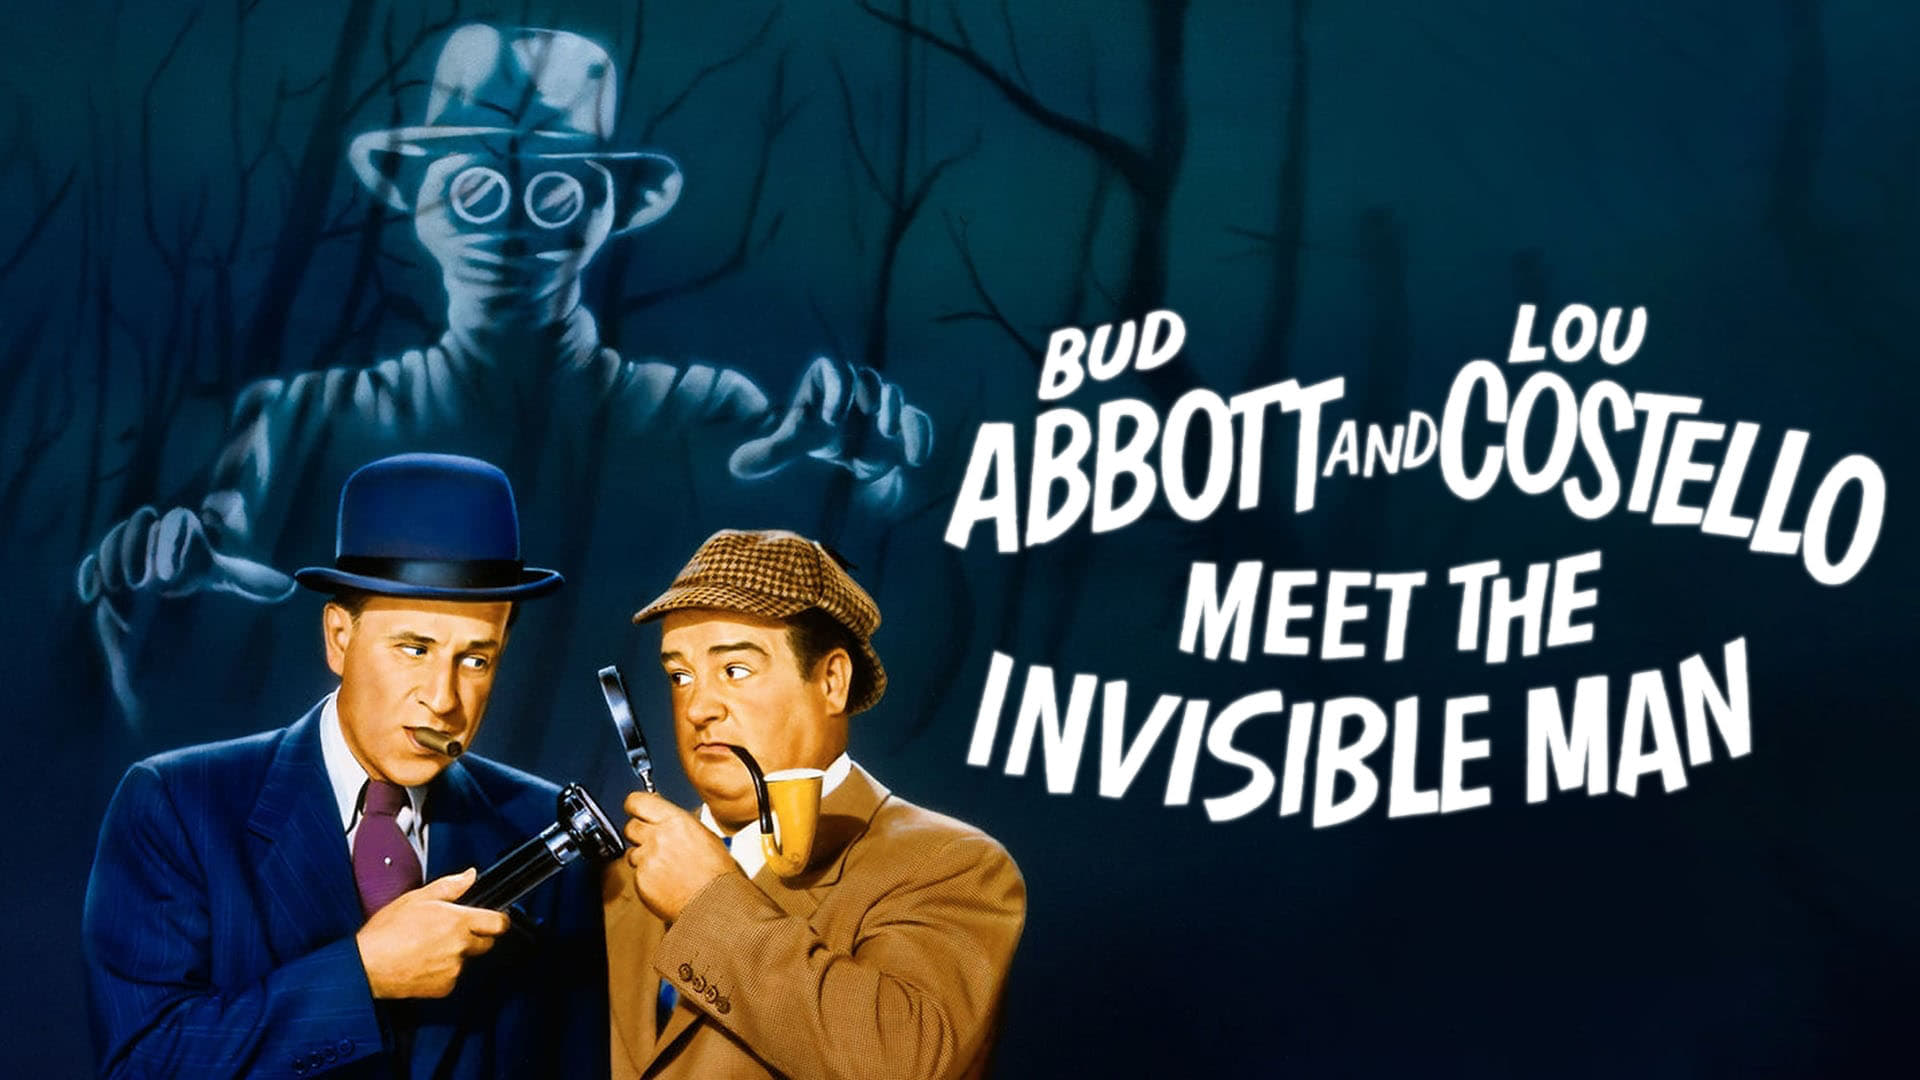 Эббот и Костелло встречают человека-невидимку (1951)